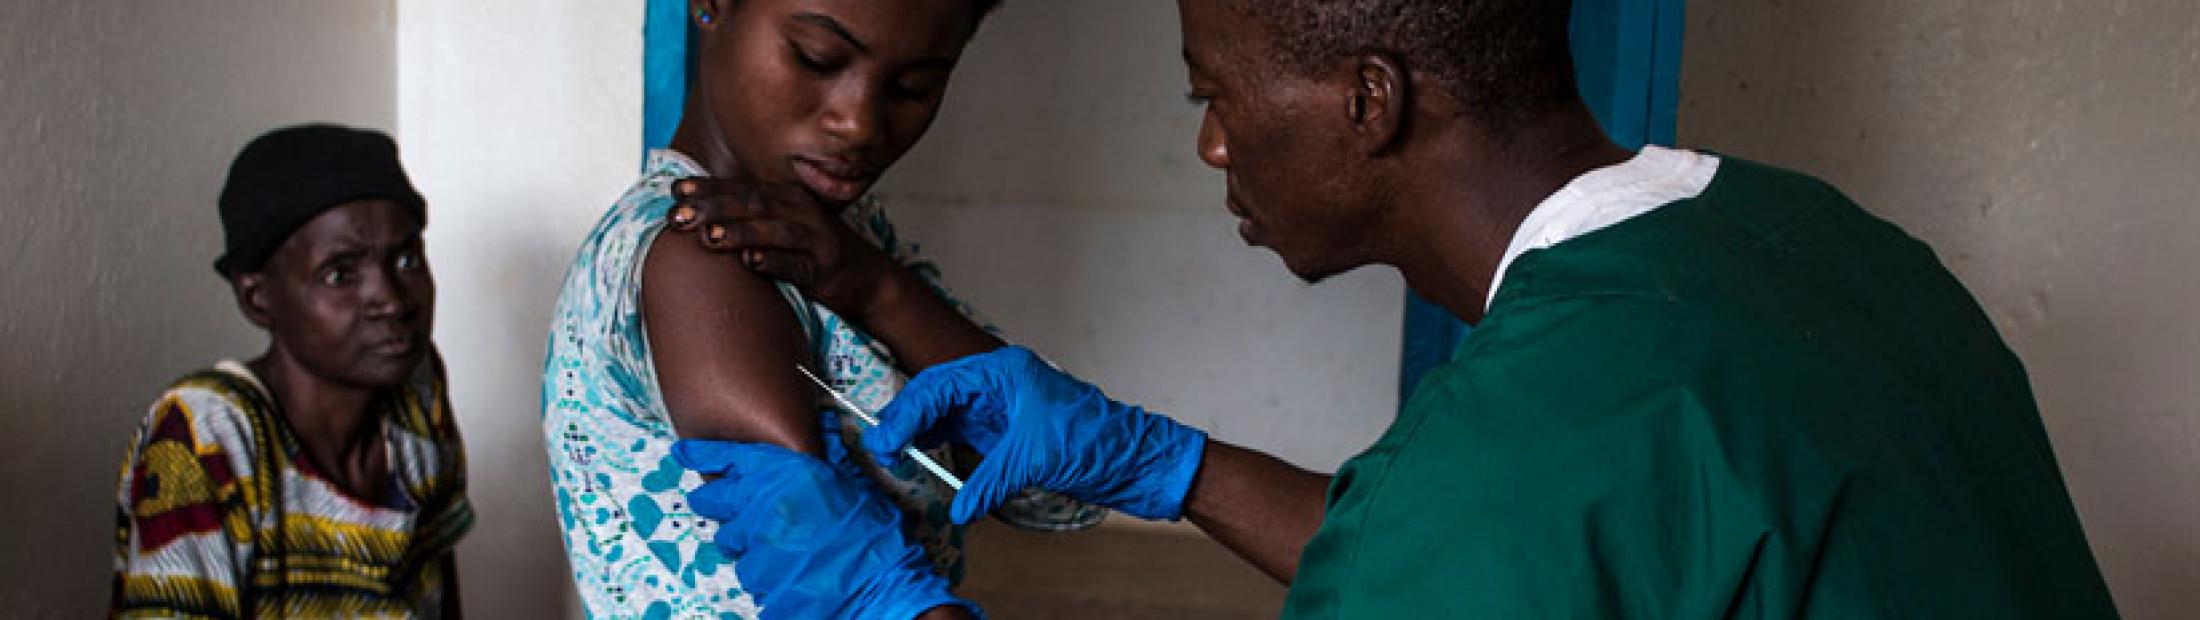 Fiebre amarilla: qué es y en qué países ha provocado epidemias mortales